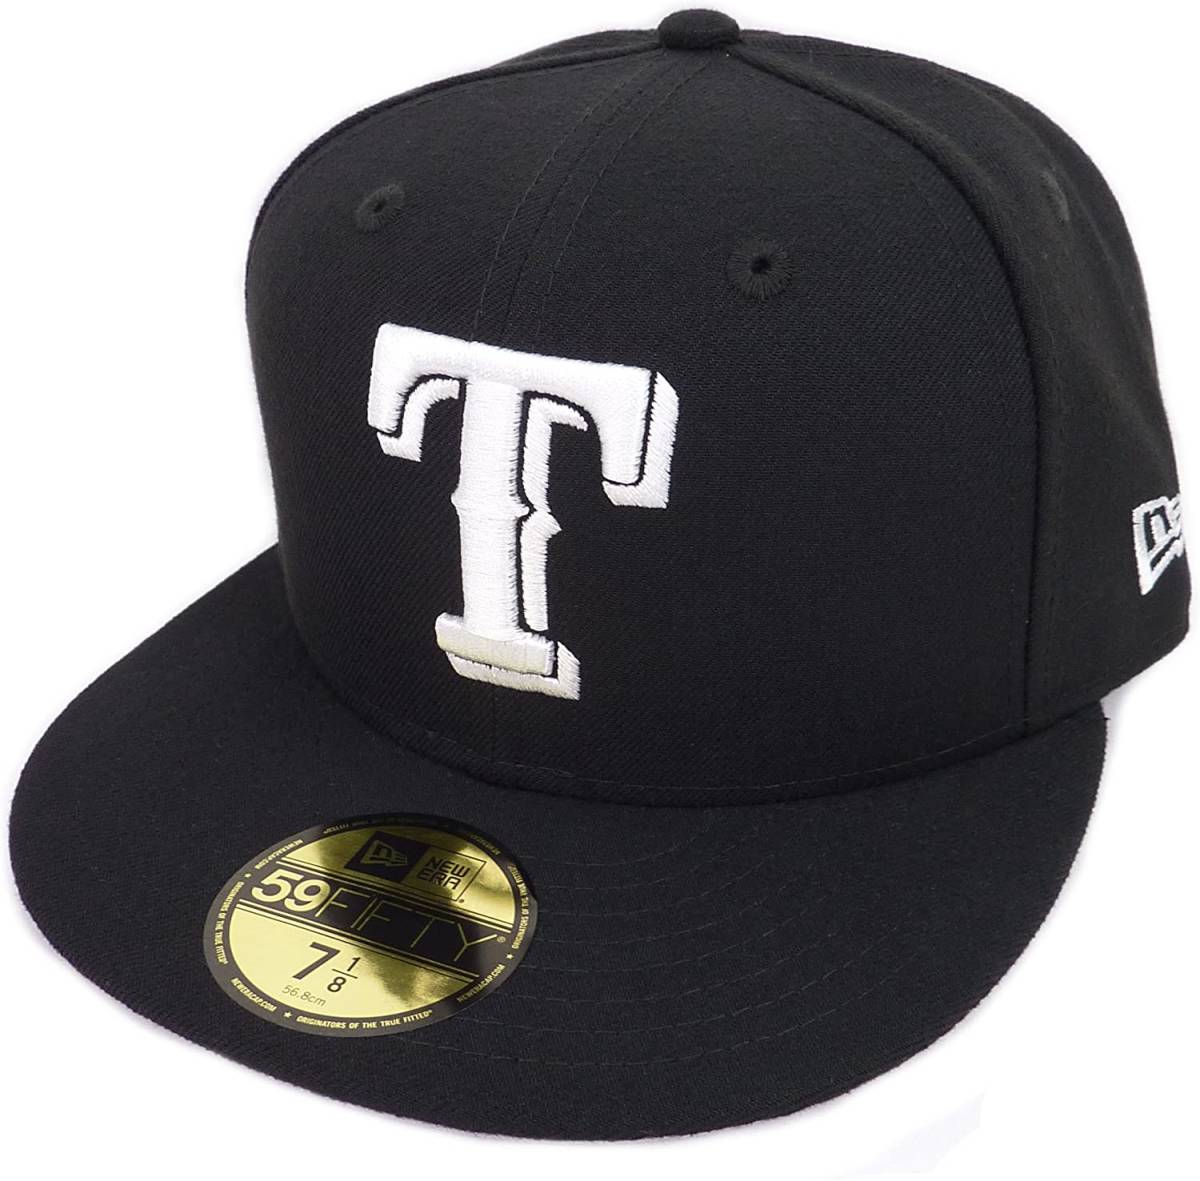 New Era ニューエラ MLB Texas Rangers テキサス レンジャース ベースボールキャップ (ブラック) (7 1/2 59.6cm) [並行輸入品]